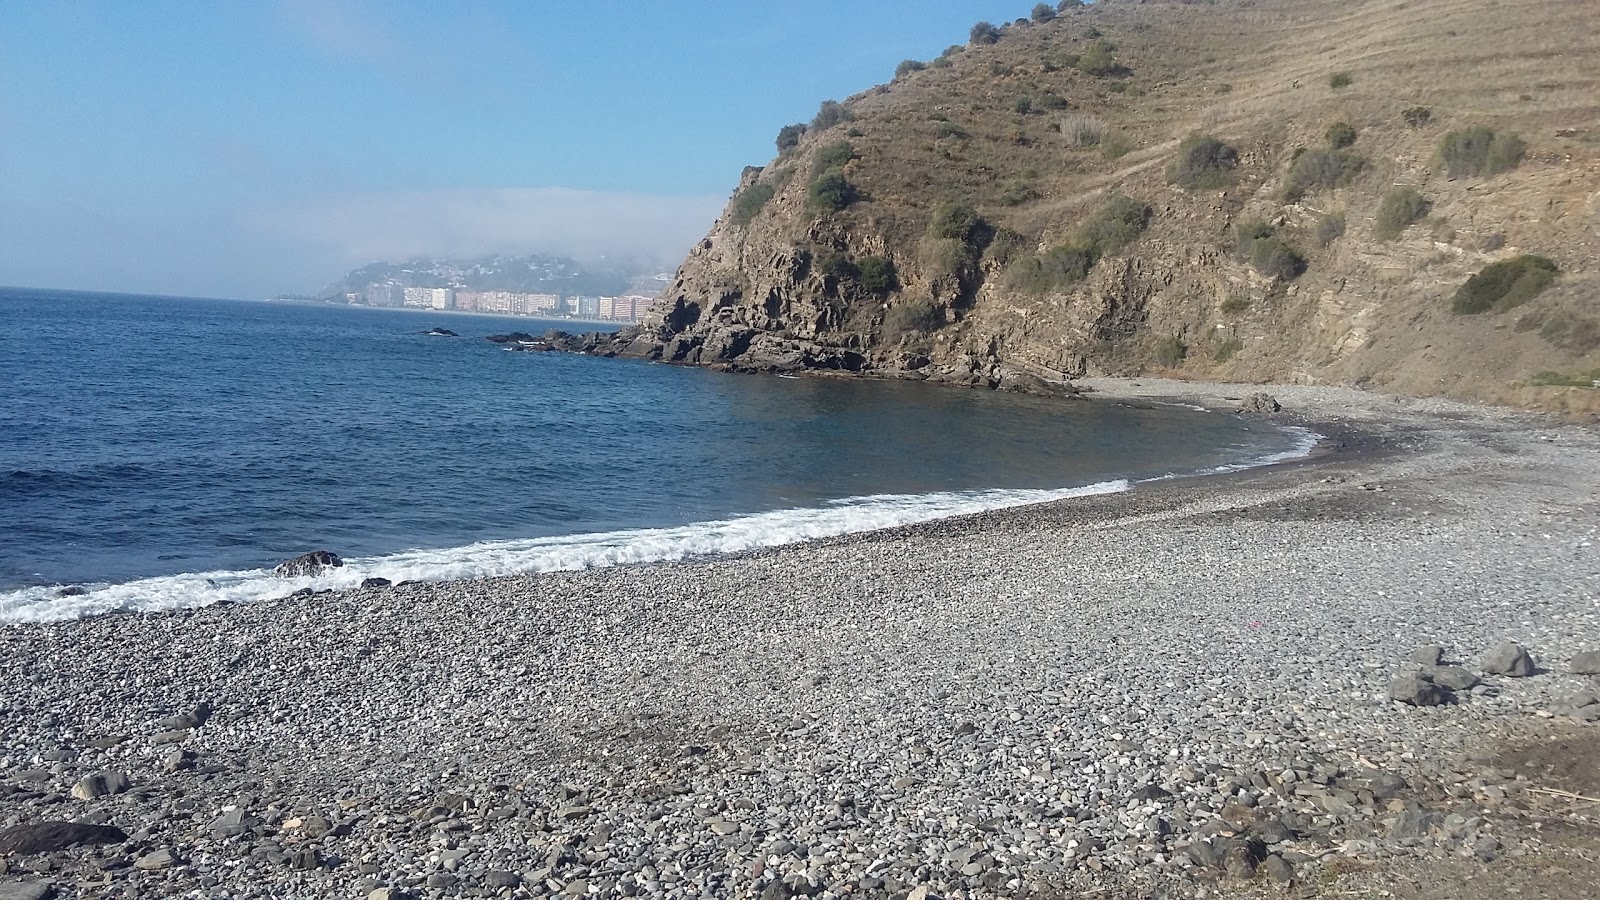 Playa Barranco de Enmedio'in fotoğrafı gri ince çakıl taş yüzey ile